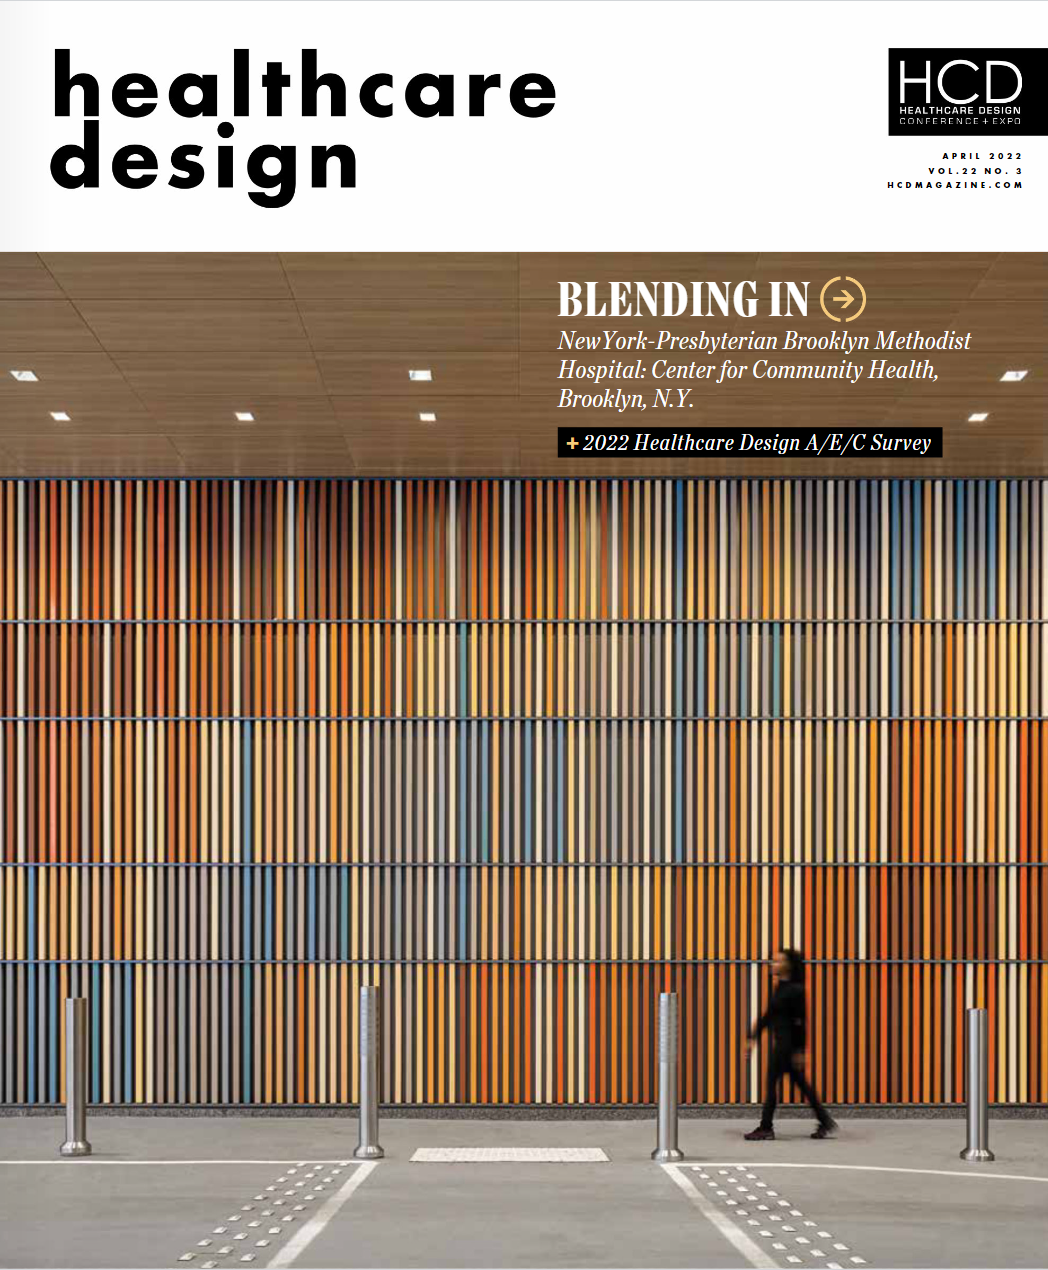 CUBE 3 Architecture Interiors Planning Healthcare Design Magazine